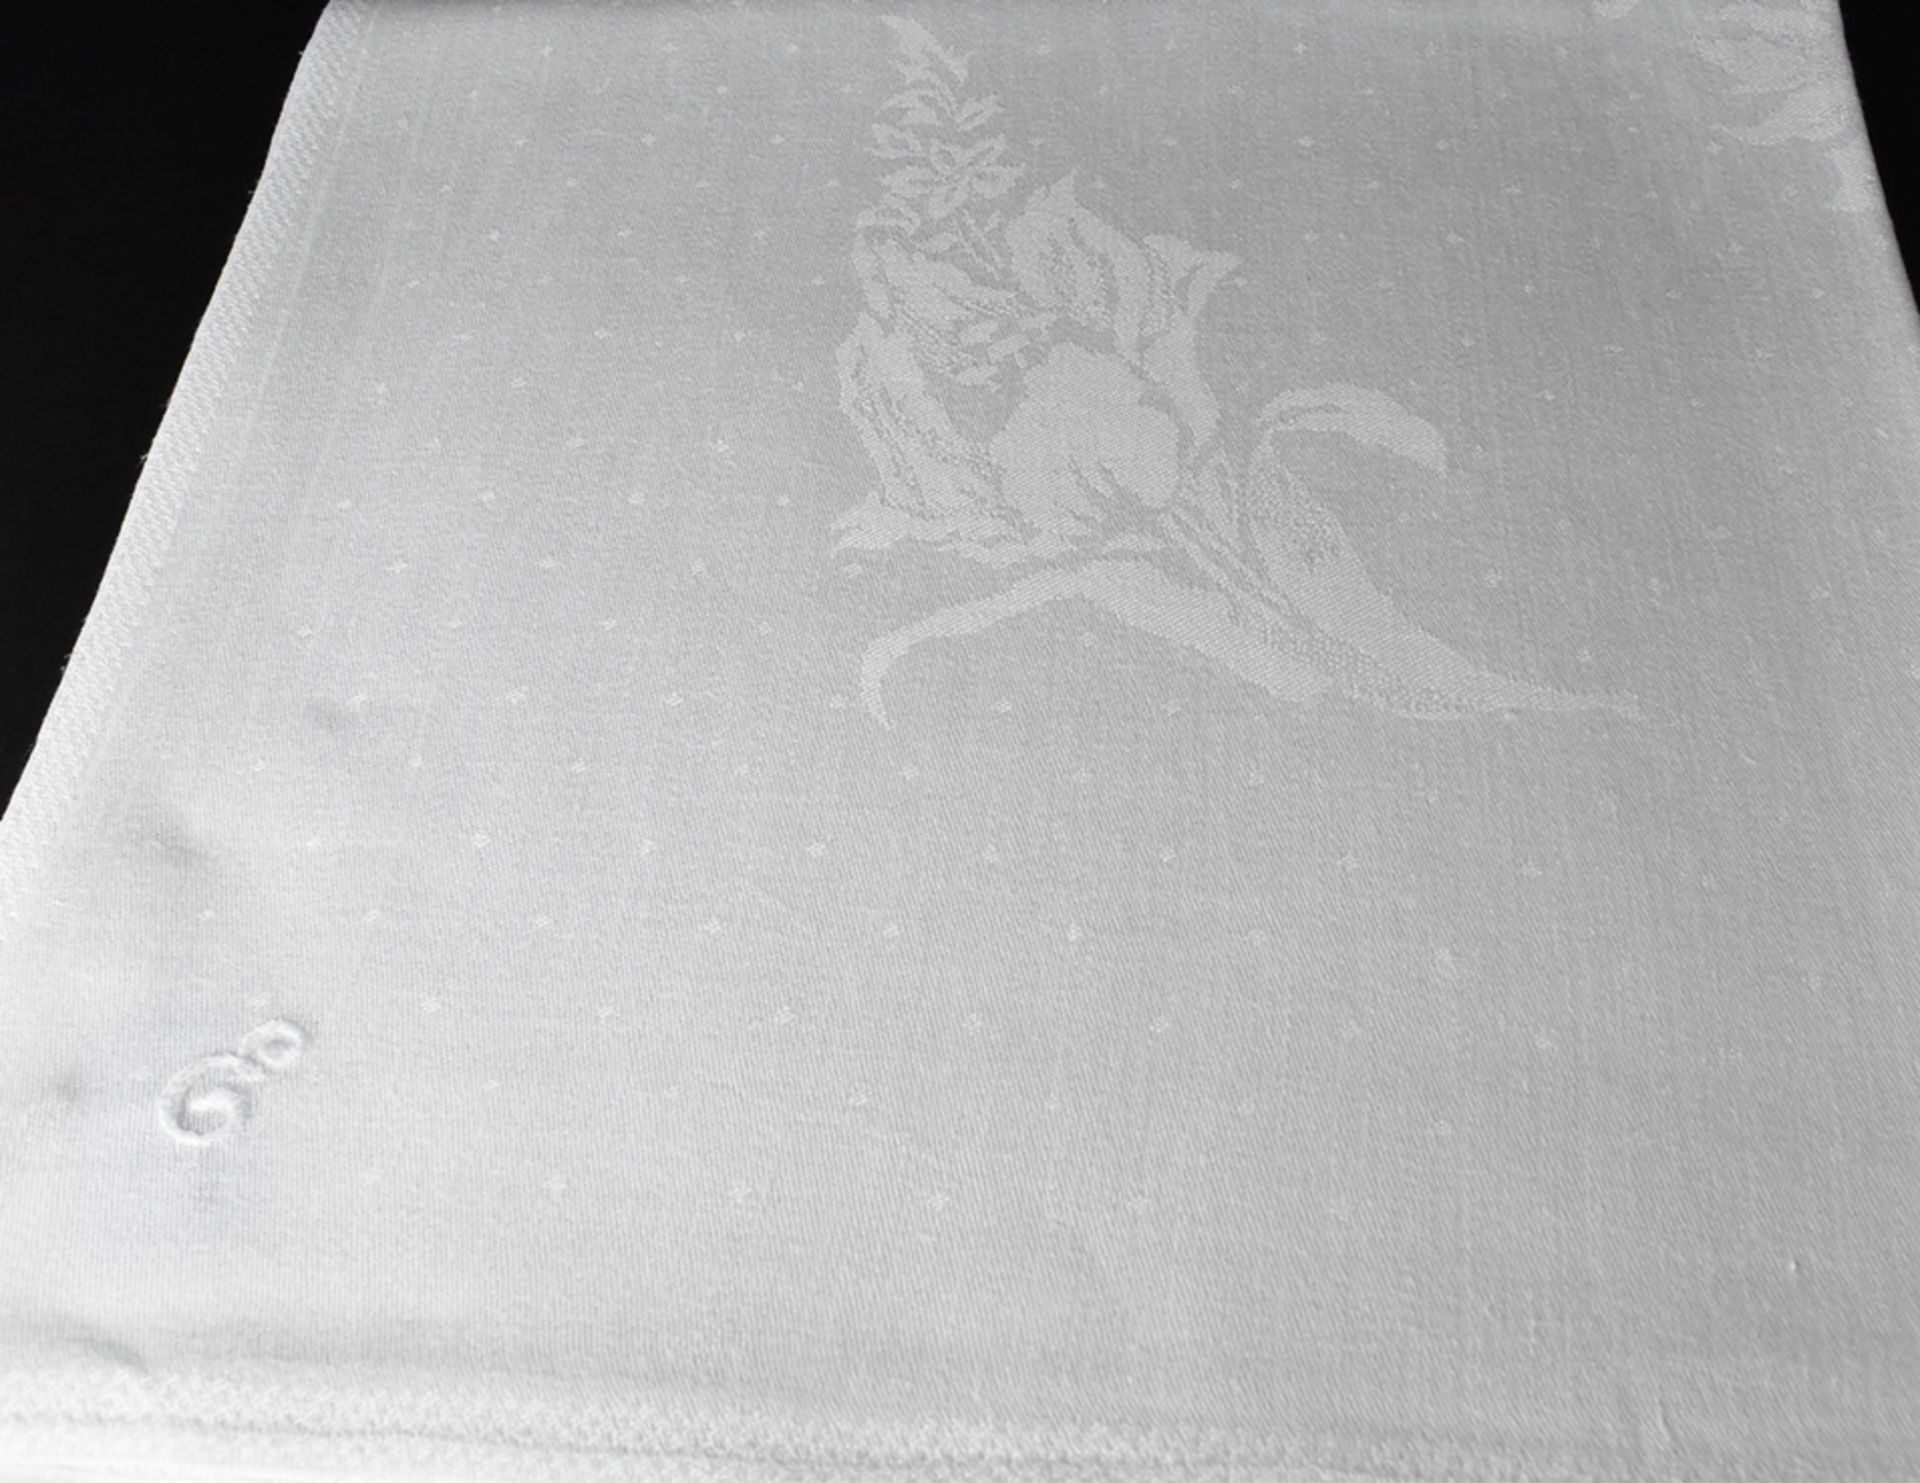 Tischtuch mit einem Doppeloval aus Blütengirlanden und Monogramm E. Leinendamast. In den Ecken groß